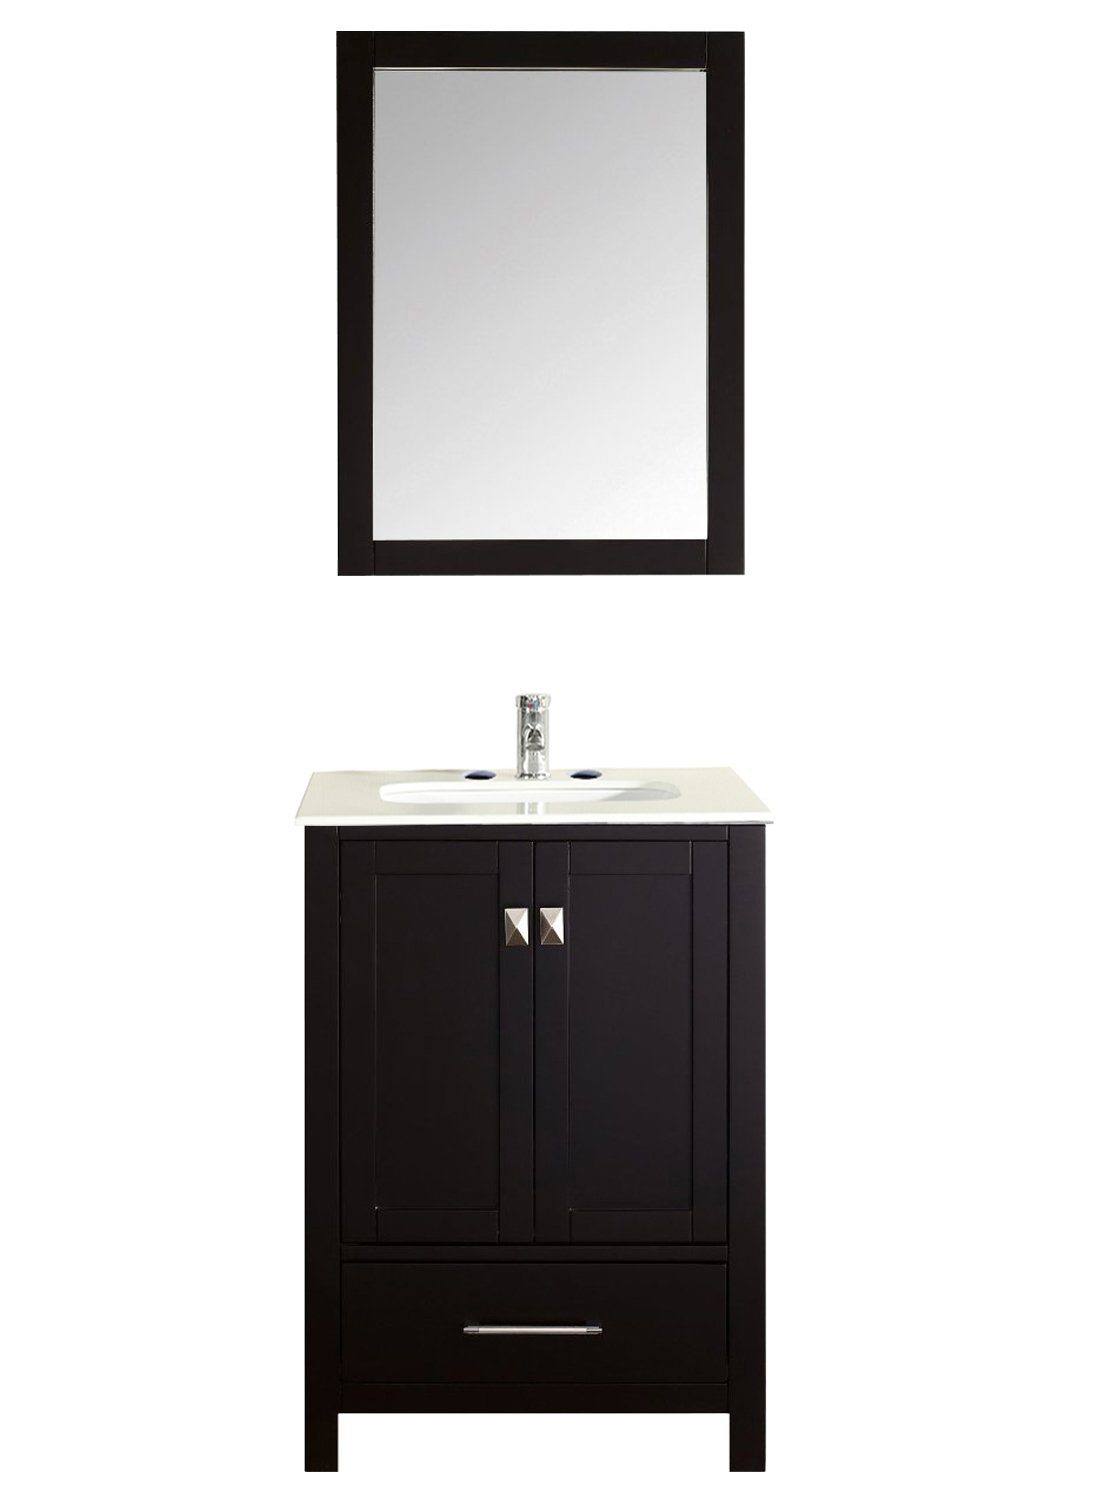 Eviva Aberdeen 24" Transitional Bathroom Vanity with White Carrera Countertop - Luxe Bathroom Vanities Luxury Bathroom Fixtures Bathroom Furniture